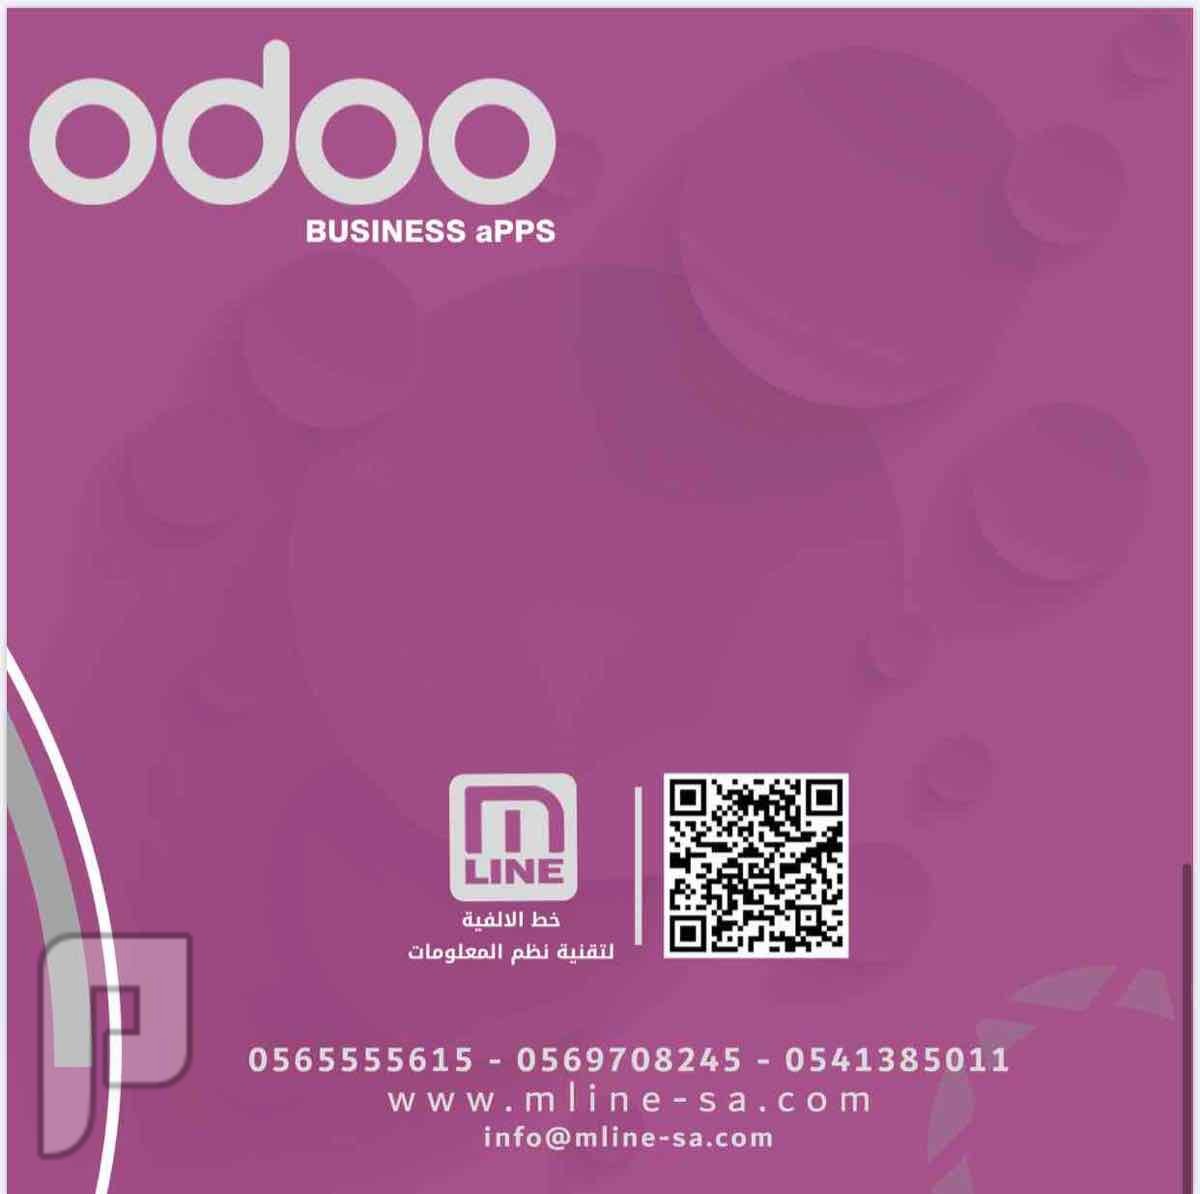 برنامج اودو odoo لكافة الانشطة التجارية